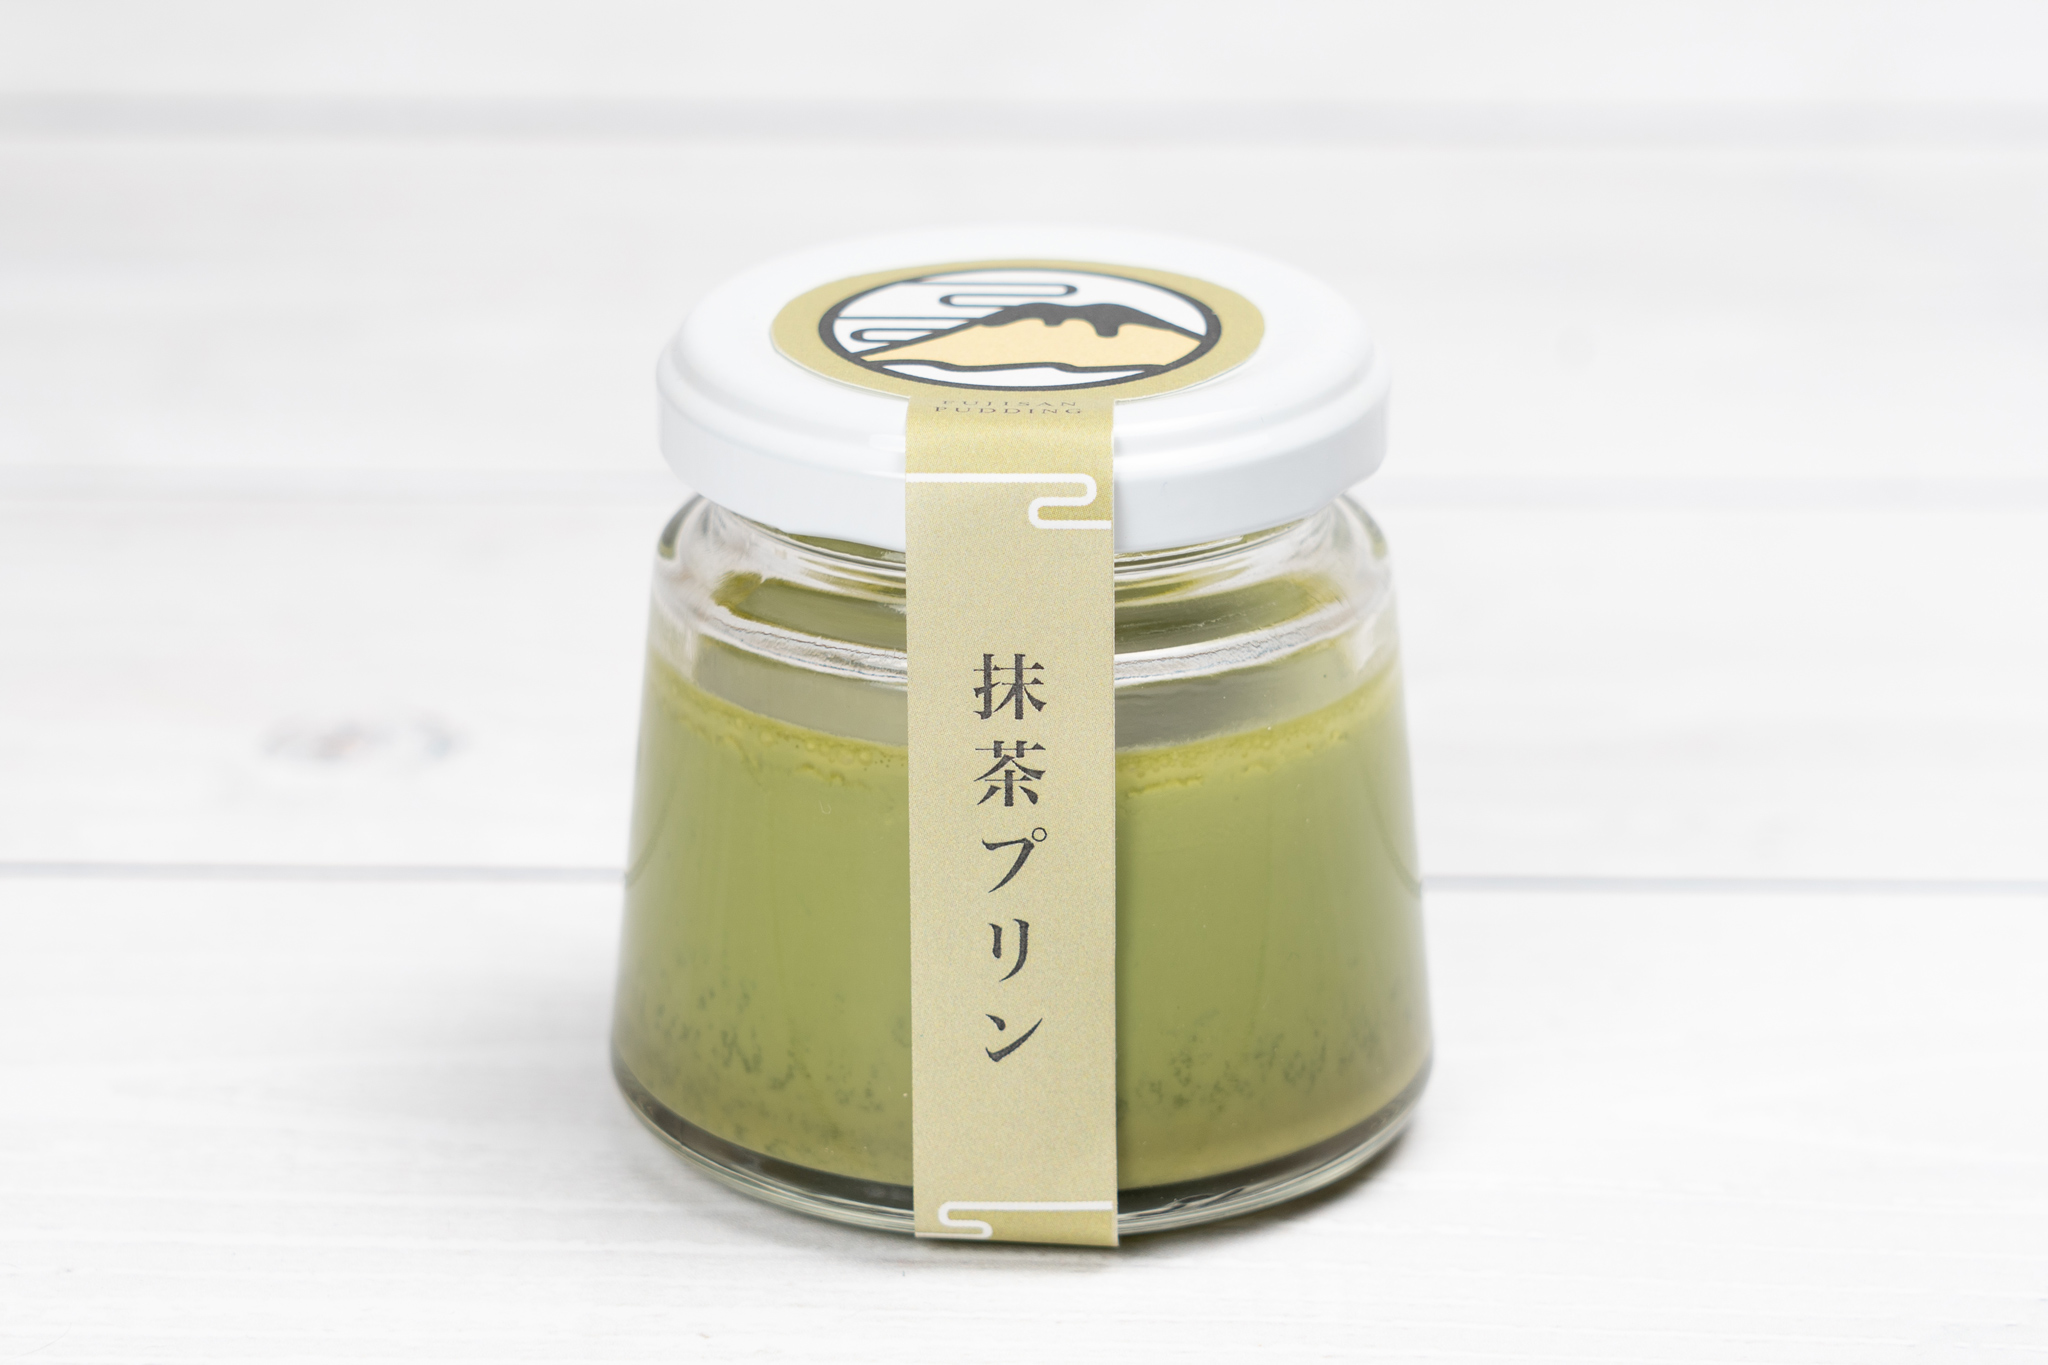 プリン専門店「富士山ぷりん」の京都宇治抹茶を使用した抹茶プリン